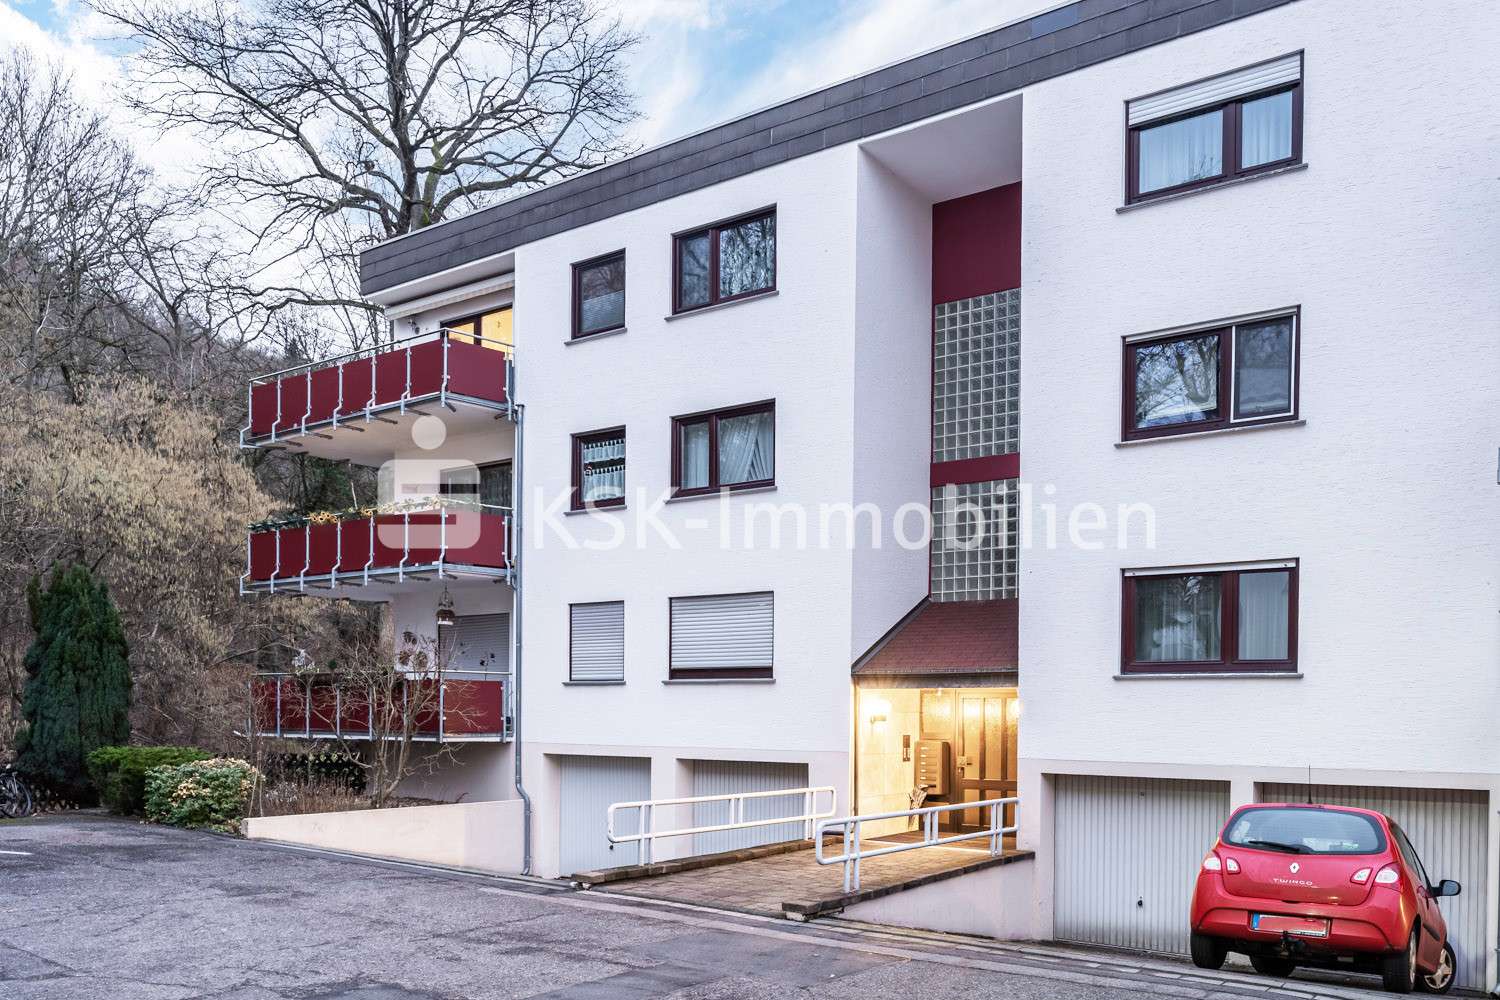 112542 Außenansicht - Erdgeschosswohnung in 53604 Bad Honnef mit 72m² günstig kaufen